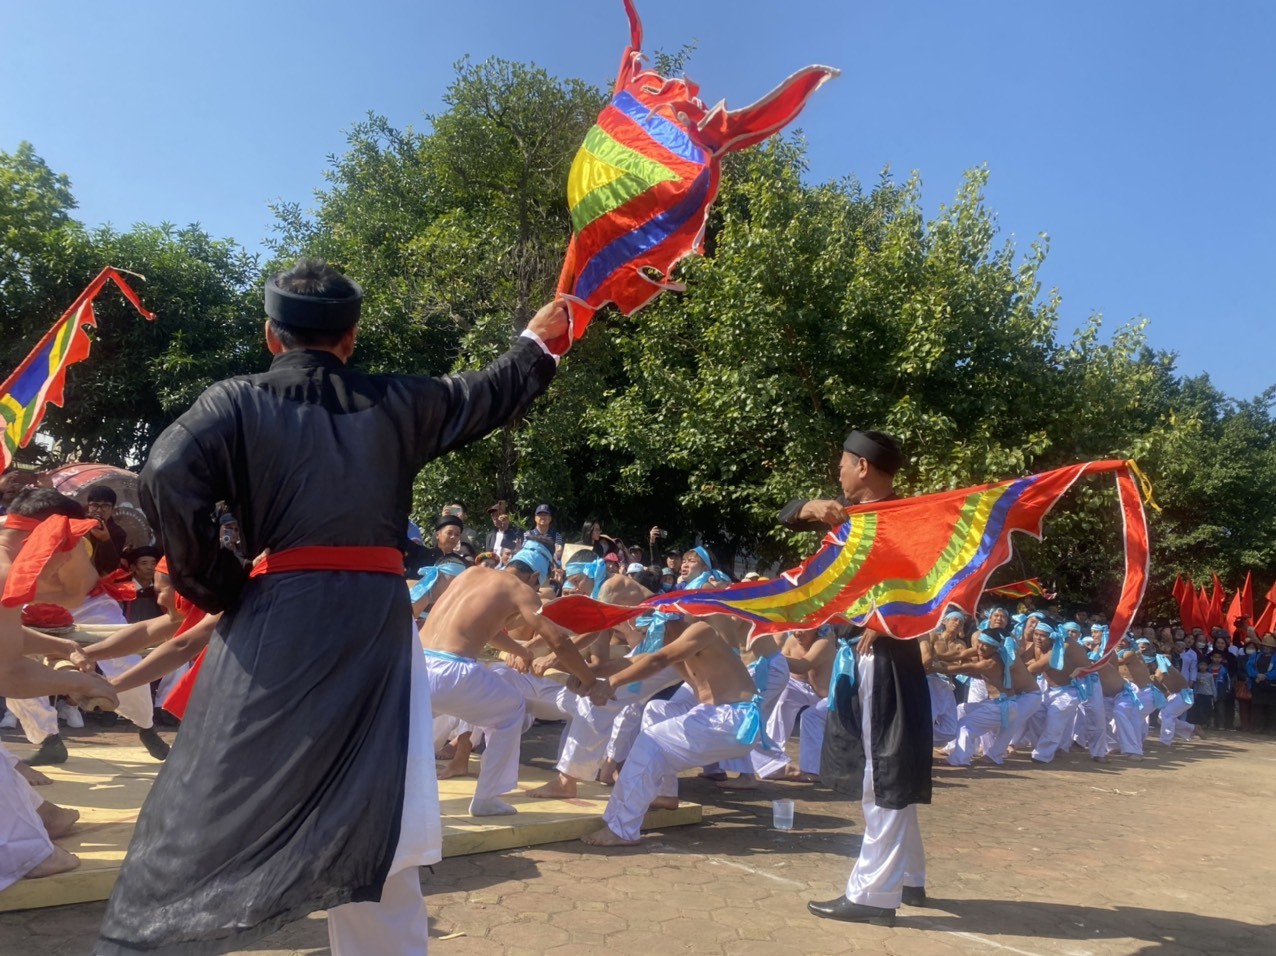 Điểm chung của nghi lễ và trò chơi kéo co của Việt Nam với các nước trên thế giới là chung một sợi dây. Sợi dây là biểu tượng của sự gắn kết cộng đồng, là sự kết nối giữa con người với thiên nhiên, là sự nối dài của những cánh tay, sự tiếp sức từ cộng đồng này đến cộng đồng khác.